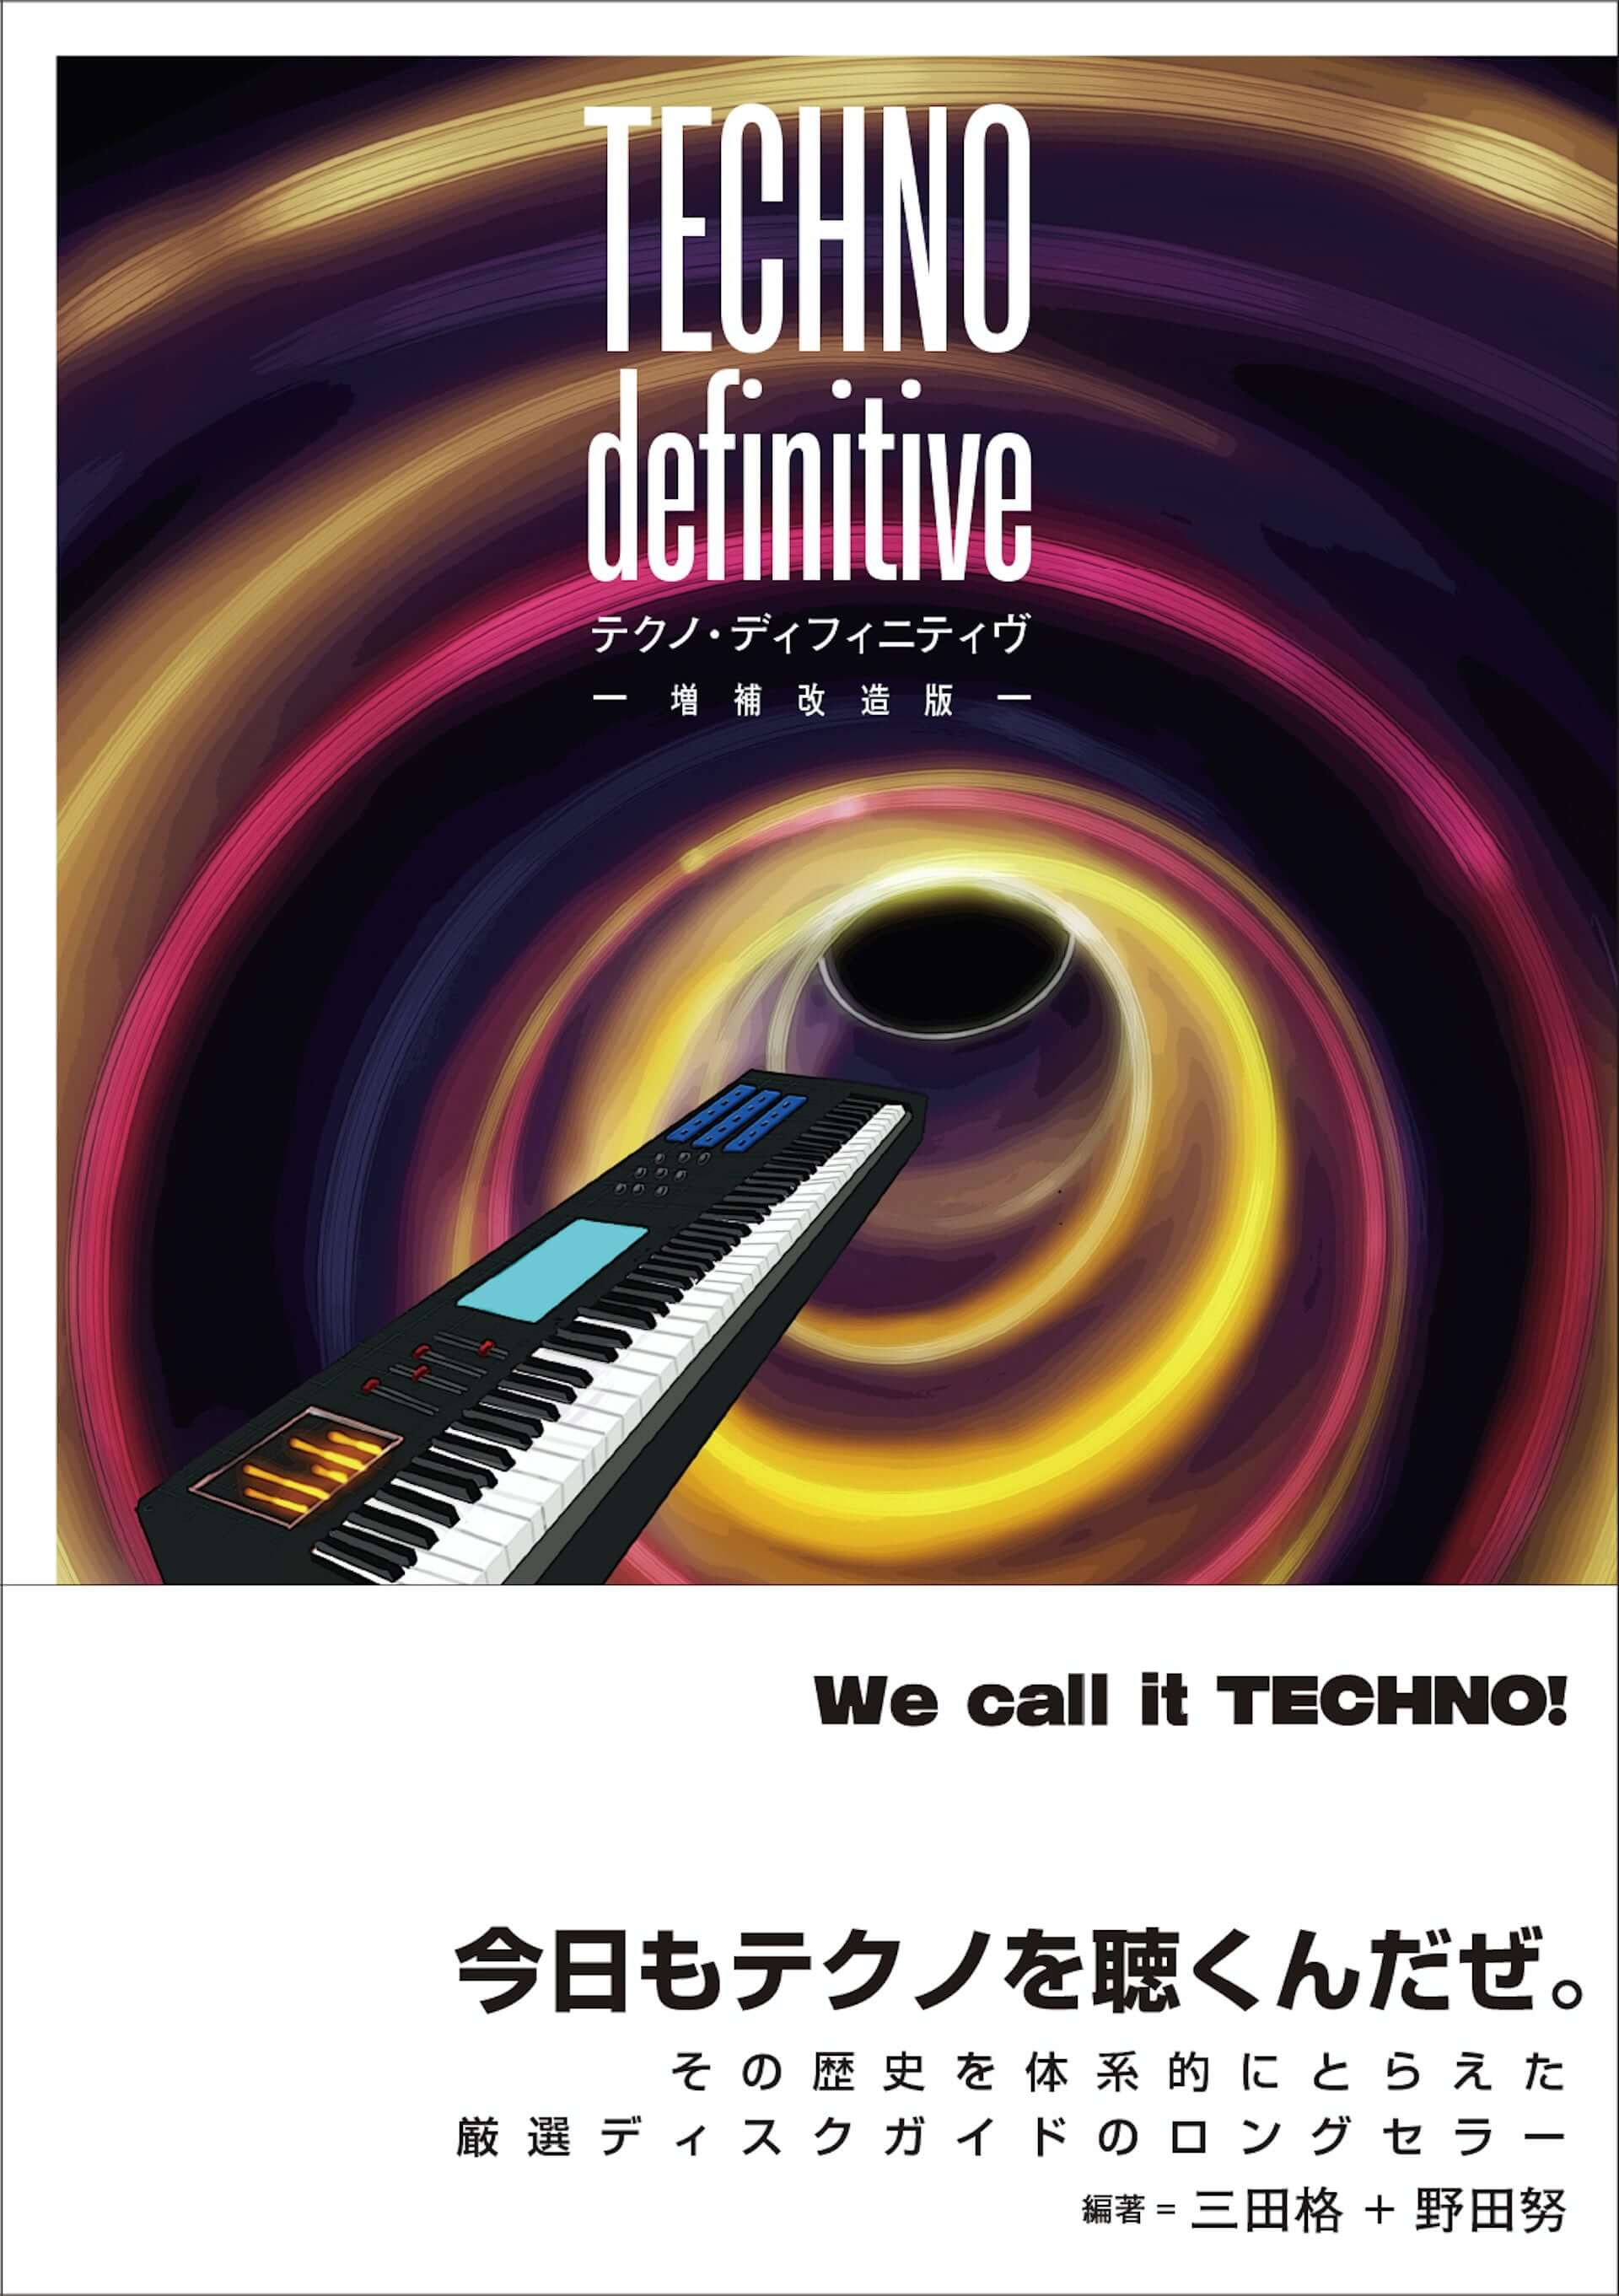 テクノの歴史がこの一冊に！三田格と野田努によるディスクガイド『TECHNO definitive 増補改造版』がele-king booksから発売 music210309_techno-definitive_2-1920x2723